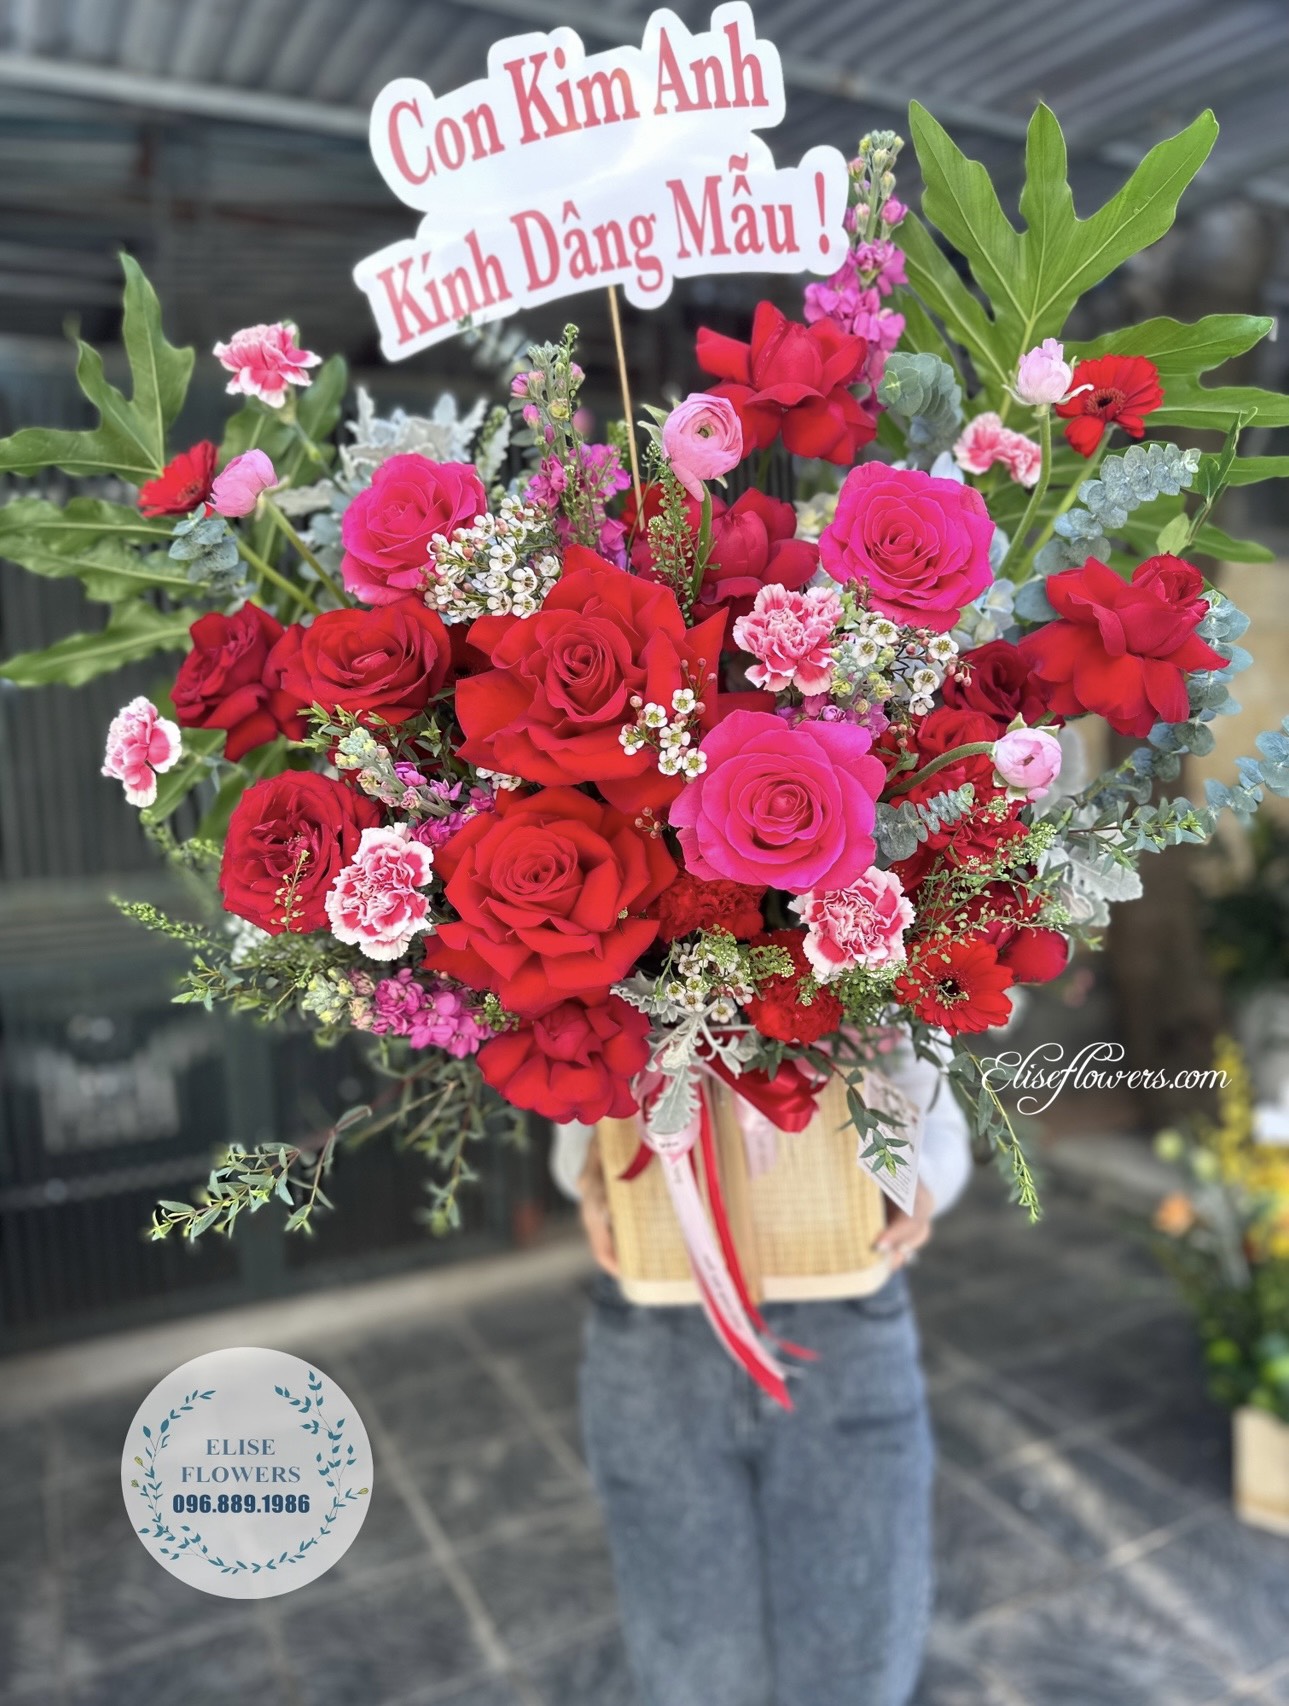 Shop hoa tươi quận Cầu Giấy Hà Nội - Elise Flowers - Hoa tươi giá rẻ Cầu Giấy